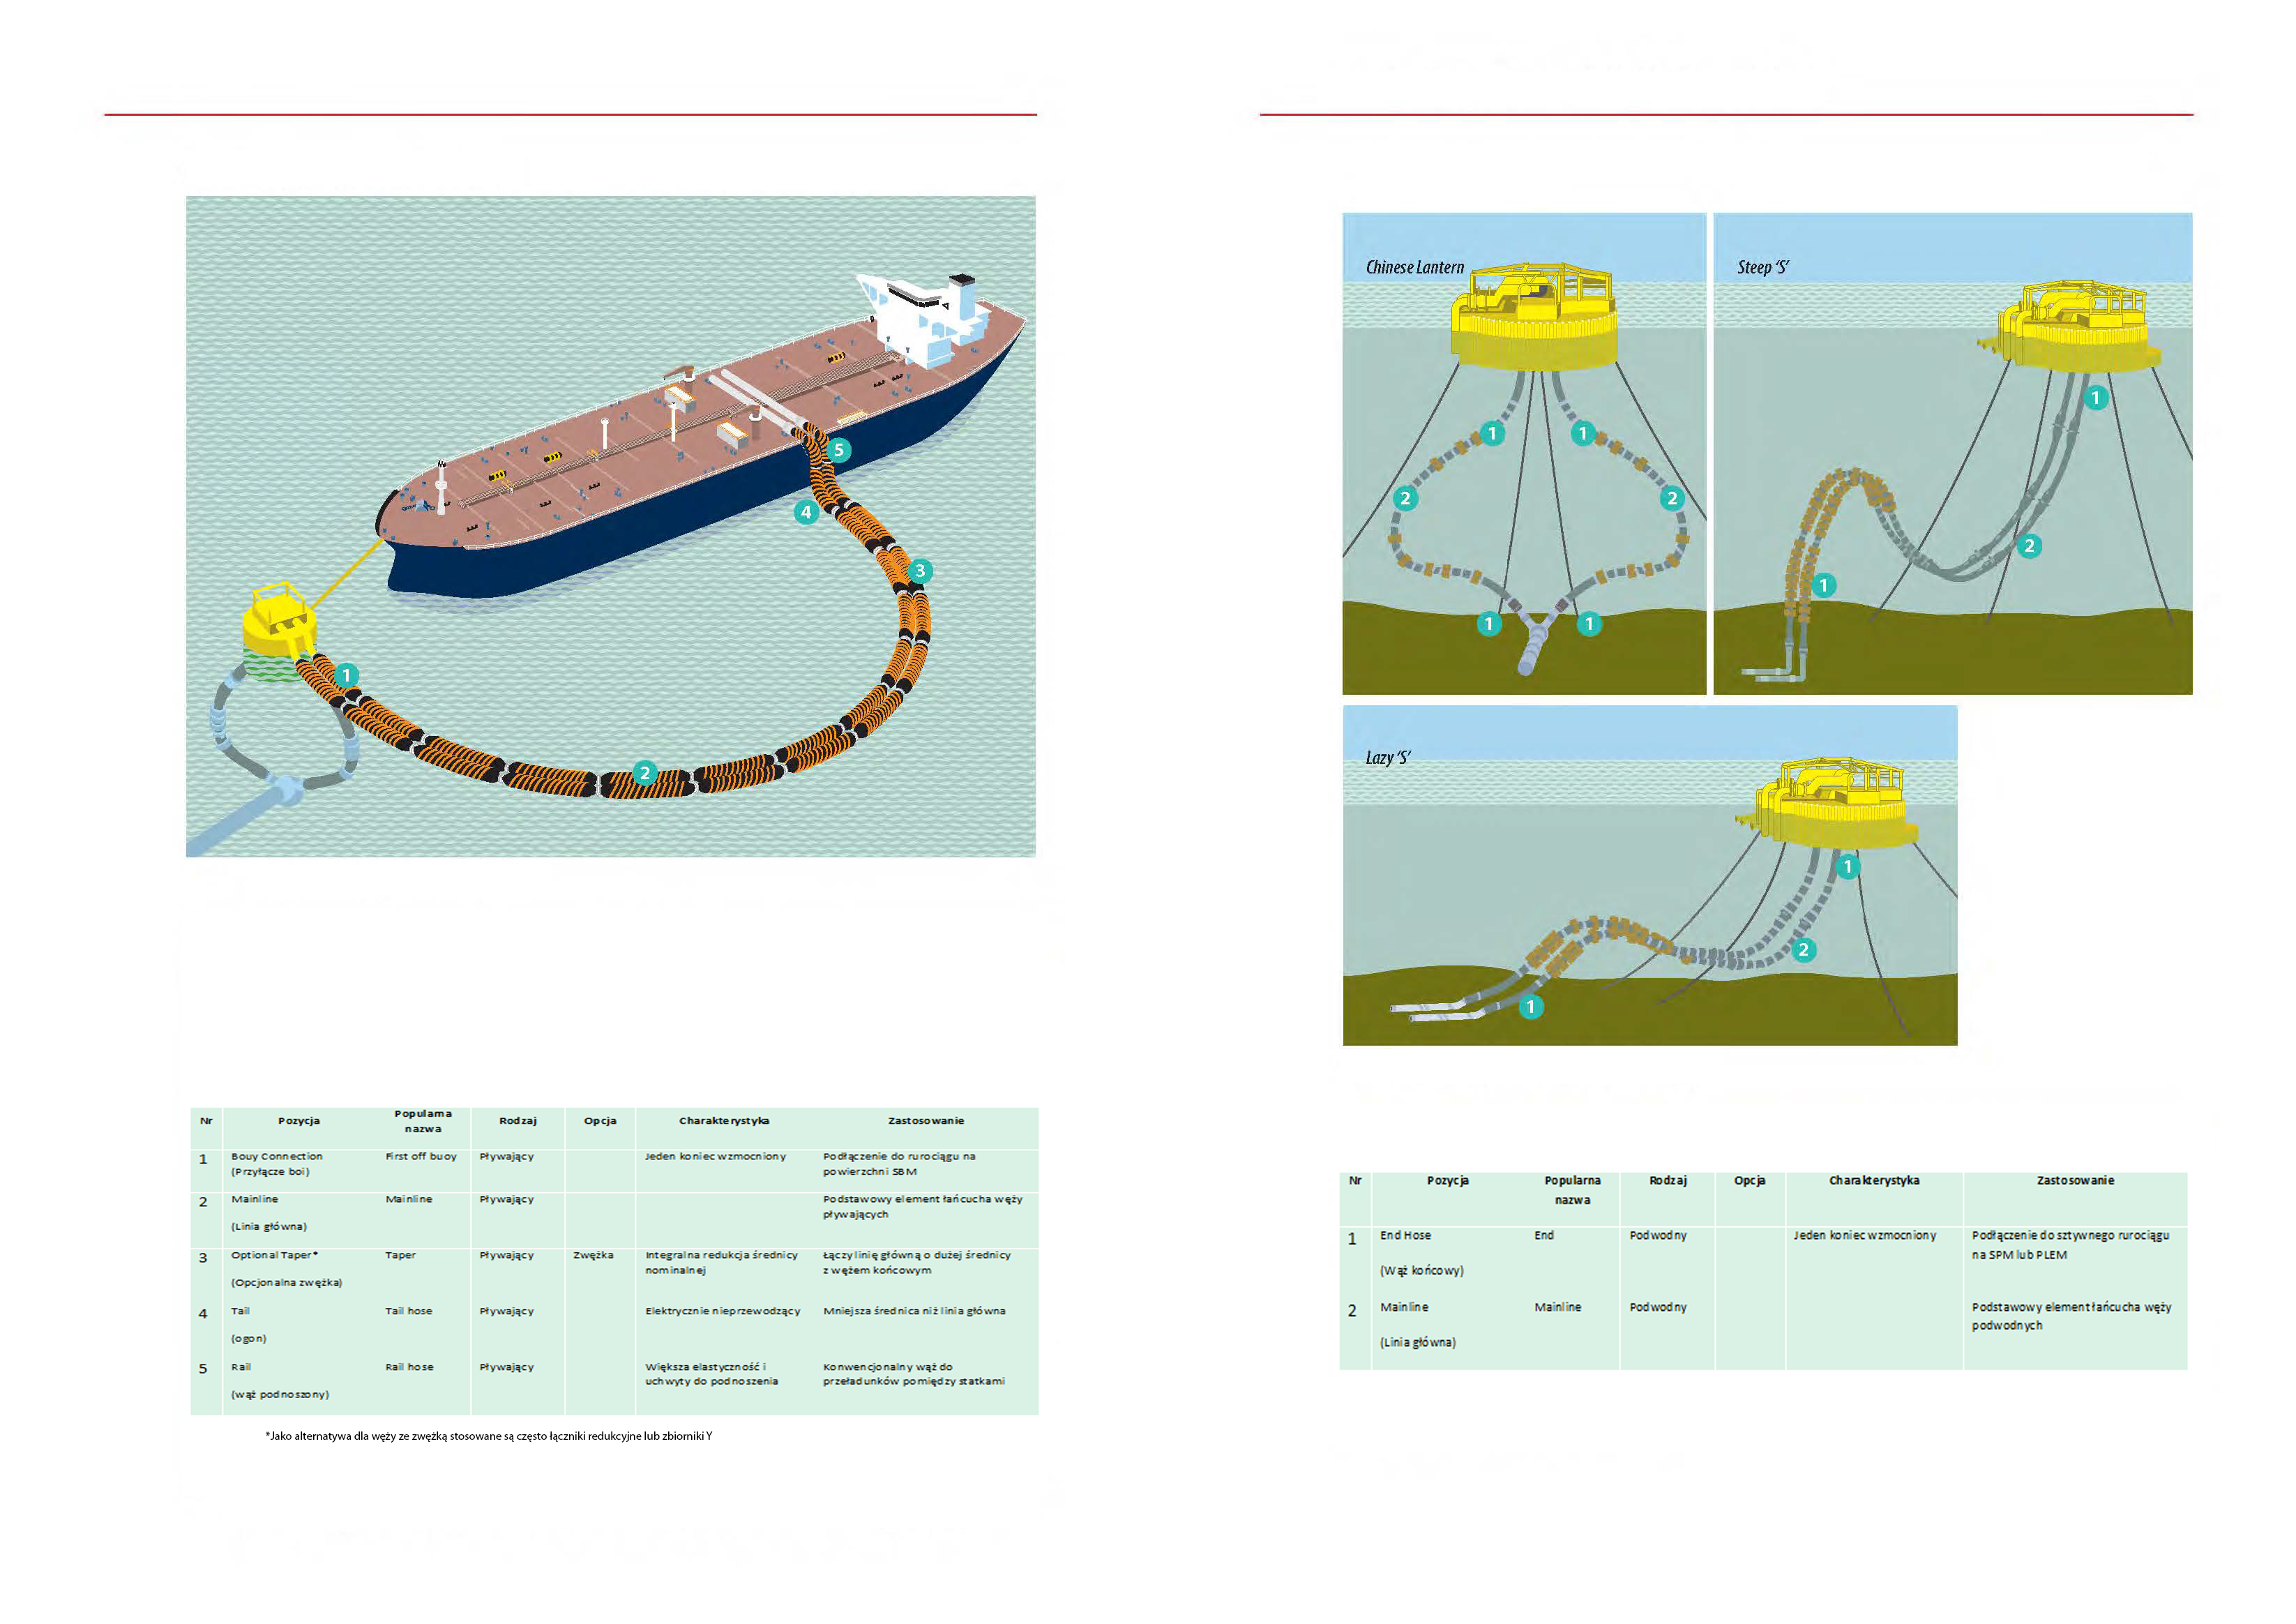 CALM (Catenary Anchor Leg Mooring) Chlnestlontt~~ Steep 'S' Lazy'S' Przykładowe podłączenie węży pływajacych w systemie CALM No Position Coon Type Buoy First off buoy Connection Floatin;i 2 Mainline